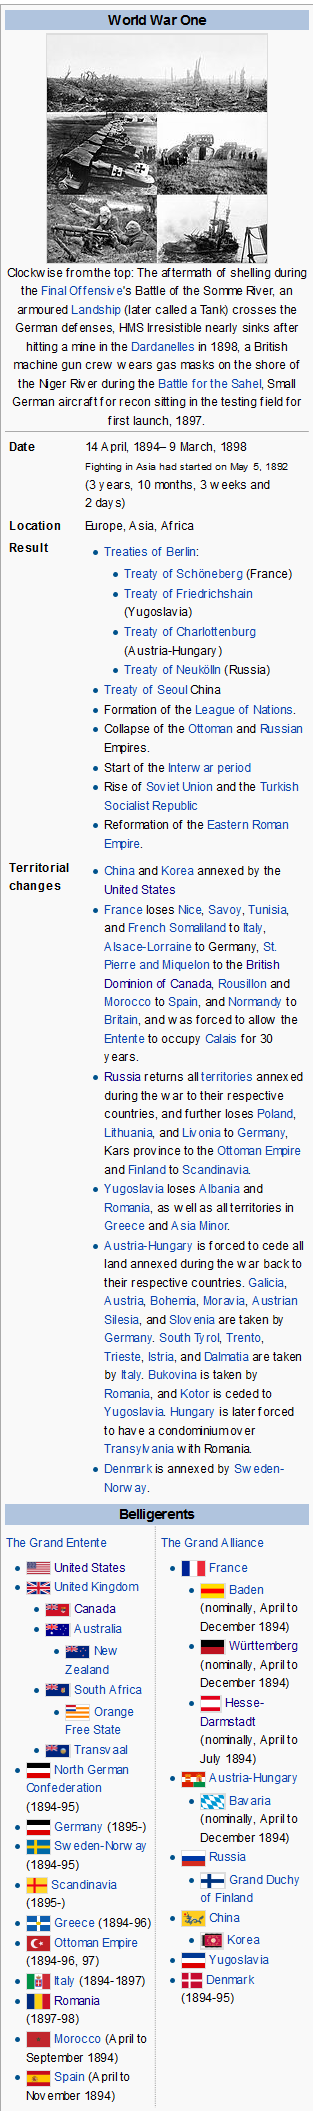 screenshot-en wikipedia org 2015-06-20 20-29-06.png